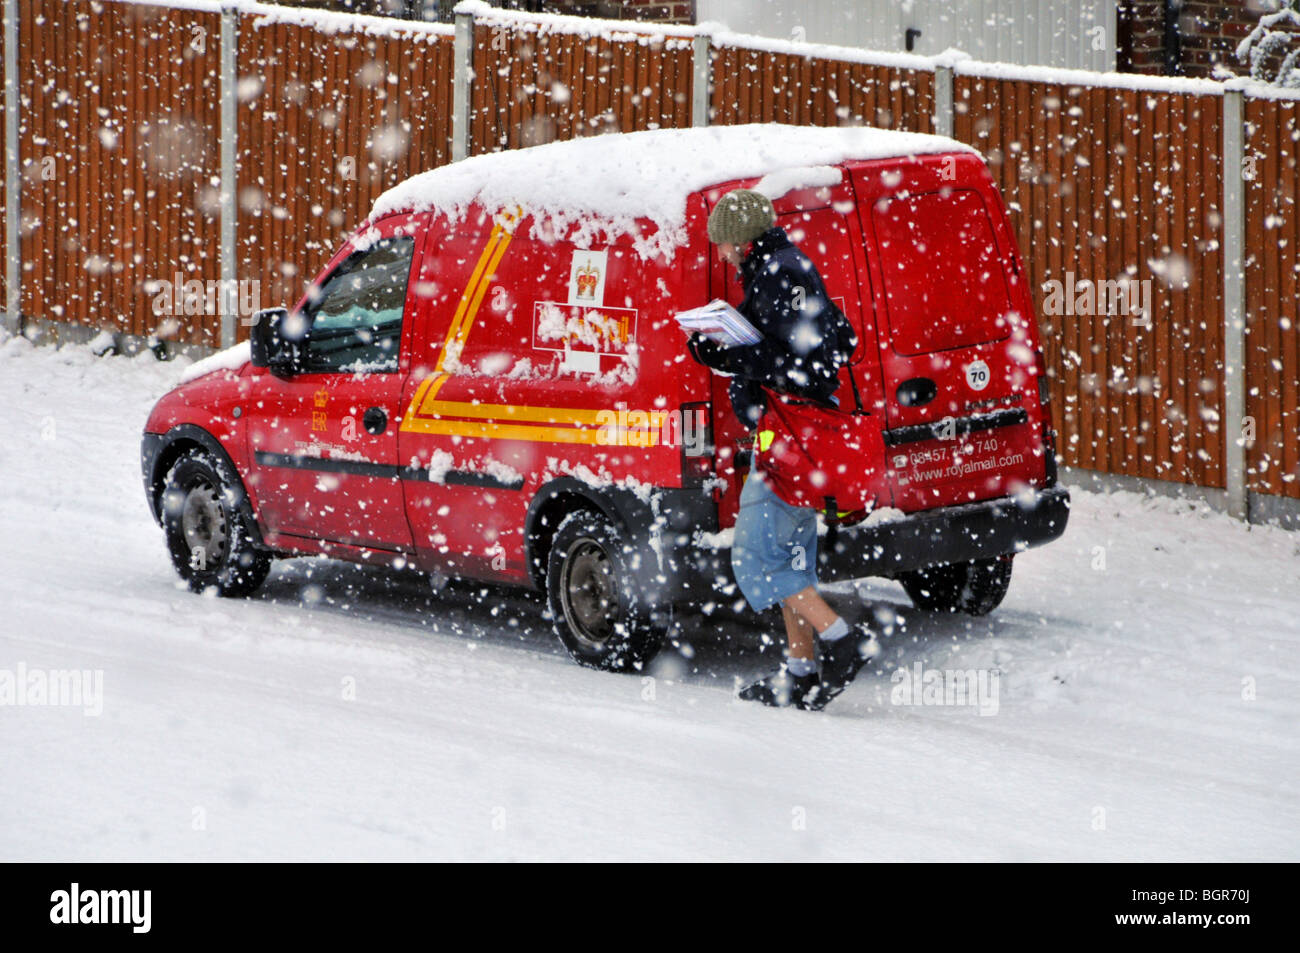 Froid hiver neige sur la livraison de Royal Mail postman travail de la camionnette de poste dans la scène résidentielle de rue dans la tempête de neige Brentwood Essex Angleterre Royaume-Uni Banque D'Images